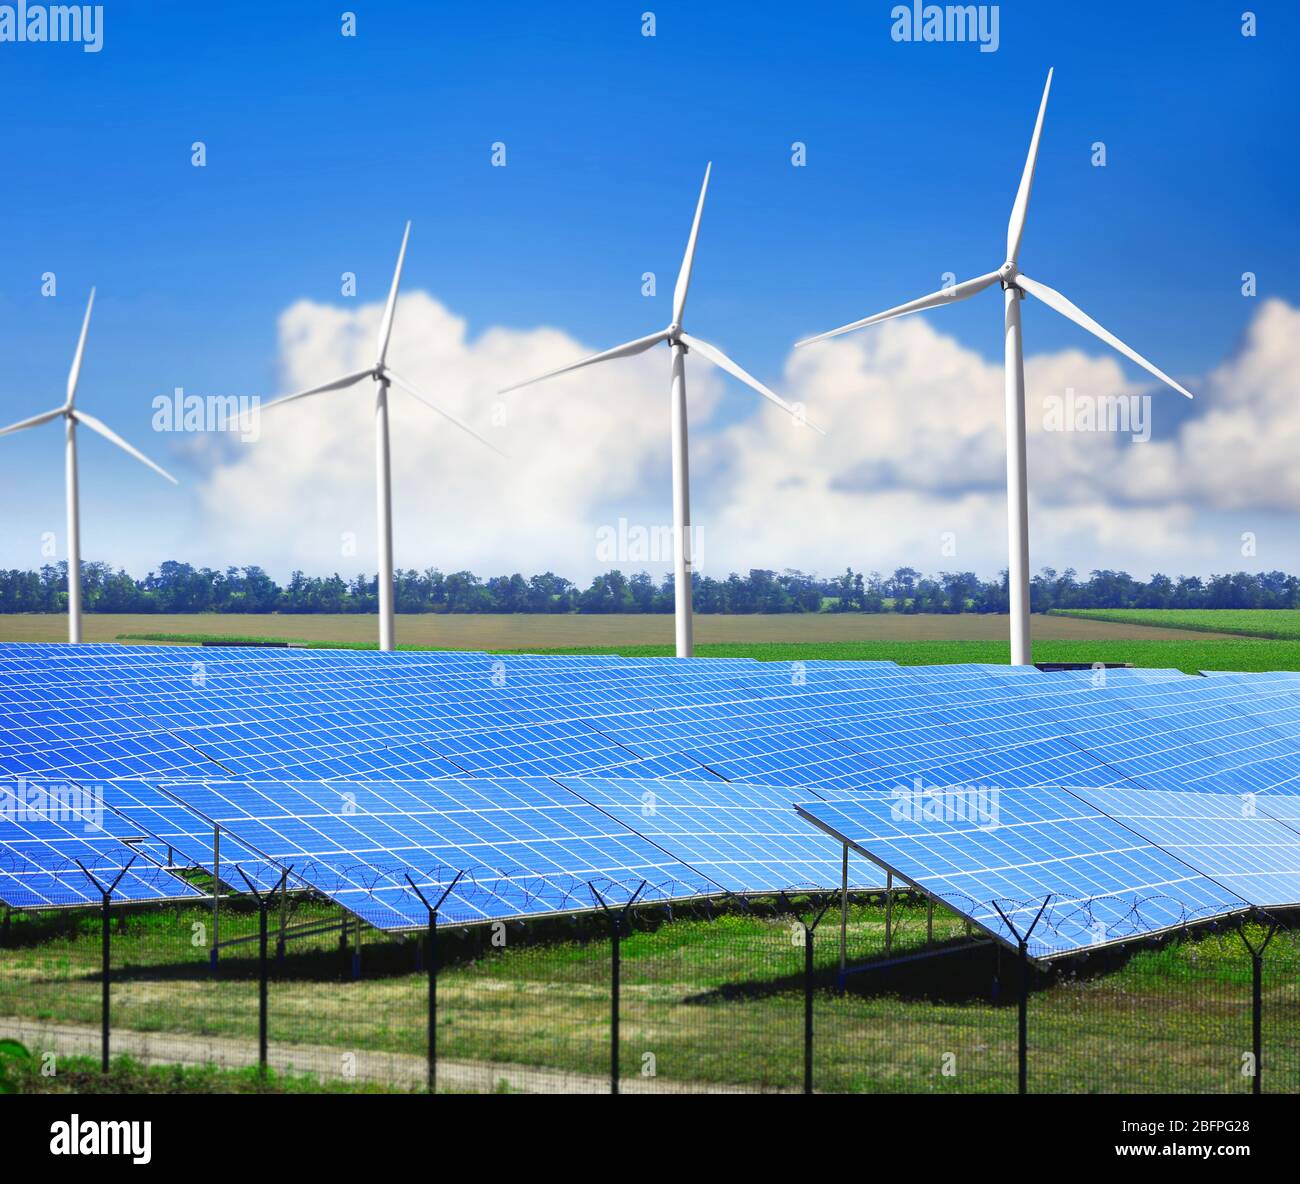 Panneaux solaires et générateurs d'énergie éolienne sur le terrain. Concept de ressources en énergie renouvelable Banque D'Images